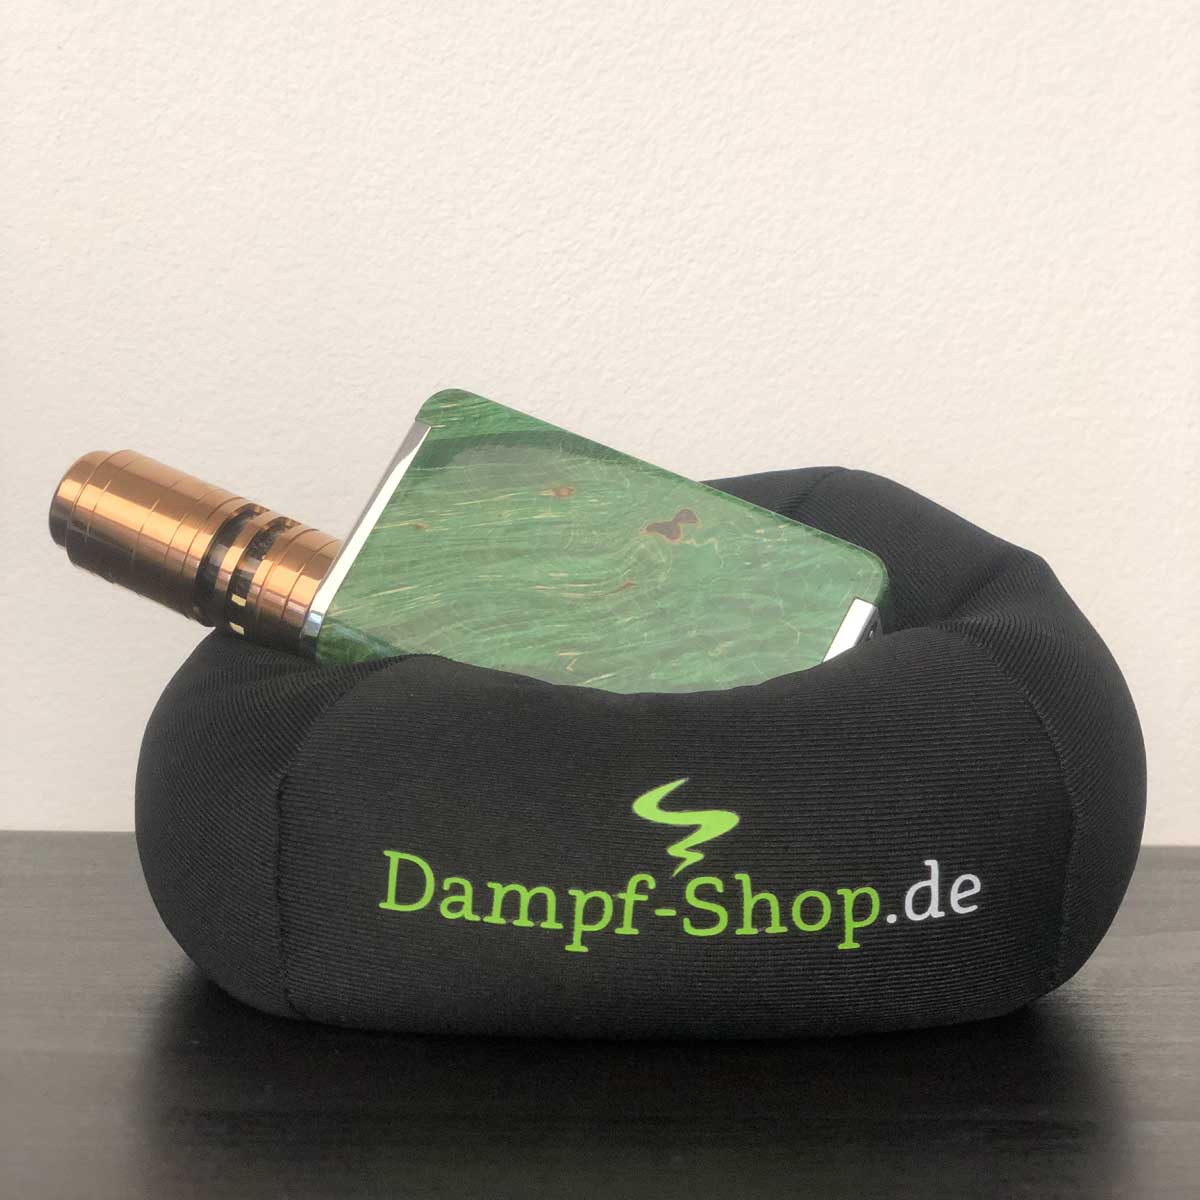 Vapillow Dampfer-Kissen mit Dampf-Shop.de Motiv